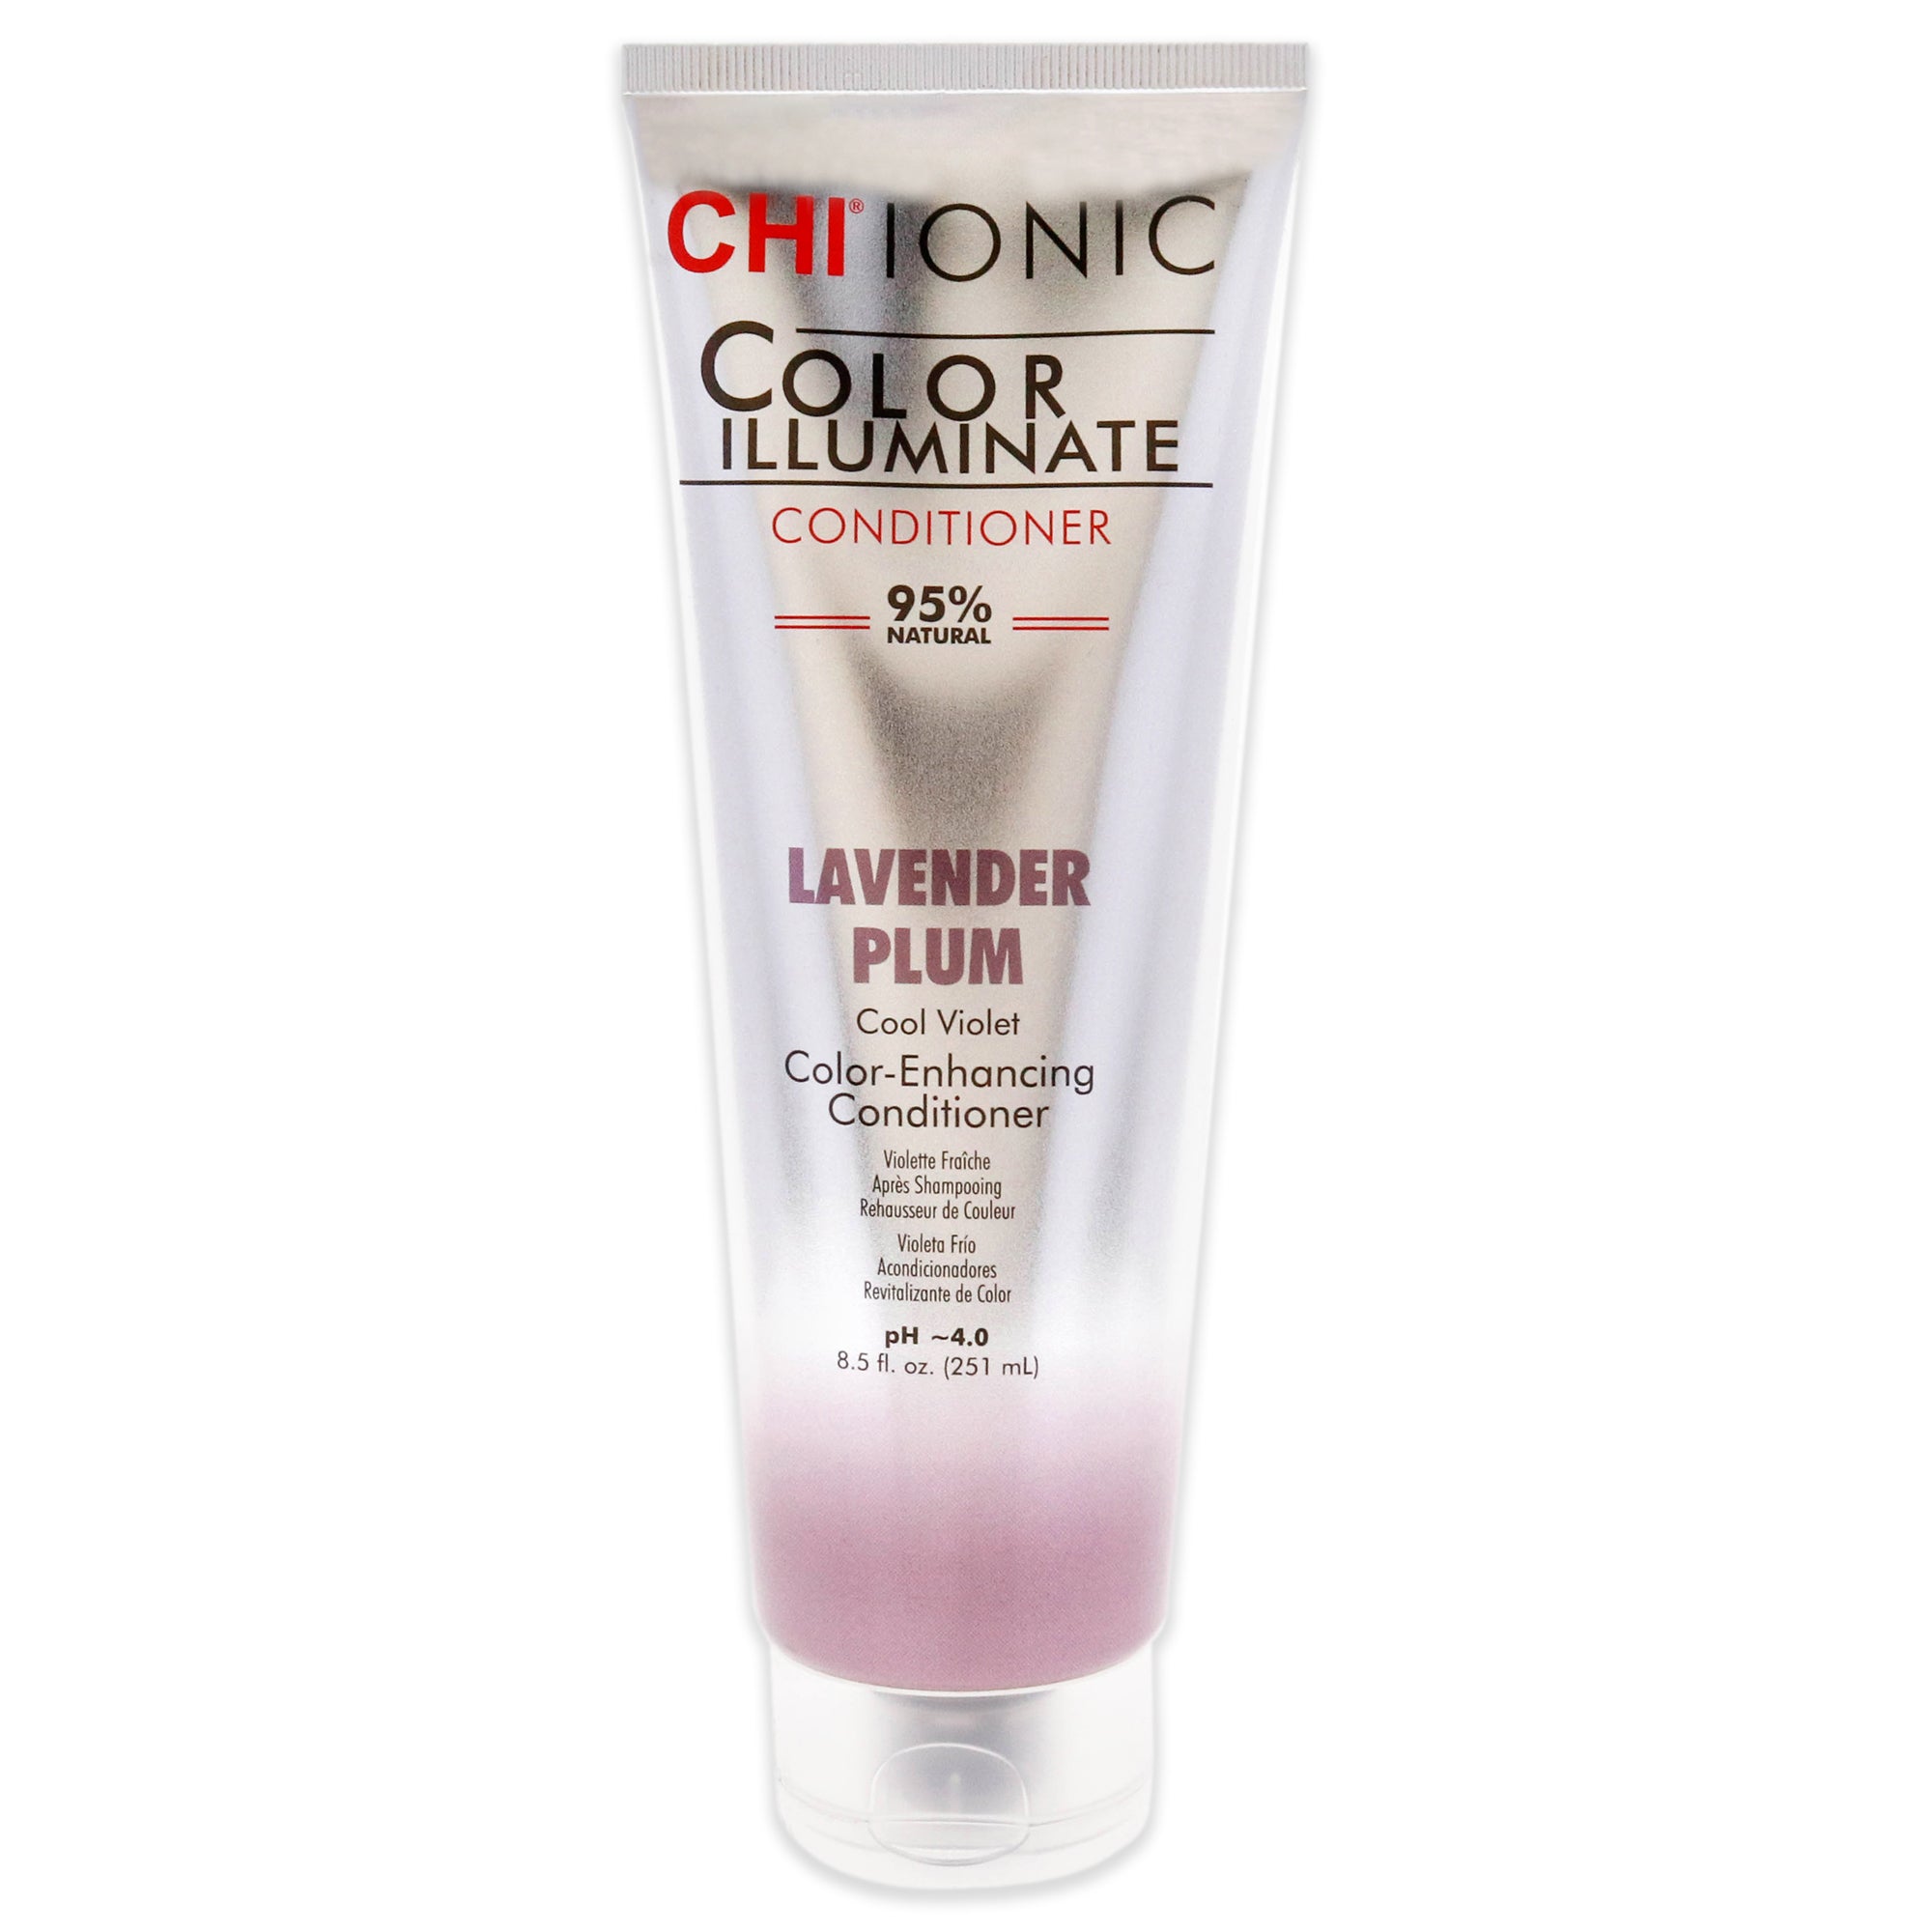 Ionic Color Illuminate Conditioner - Lavender Plum by CHI for Unisex - 8.5 oz Conditioner